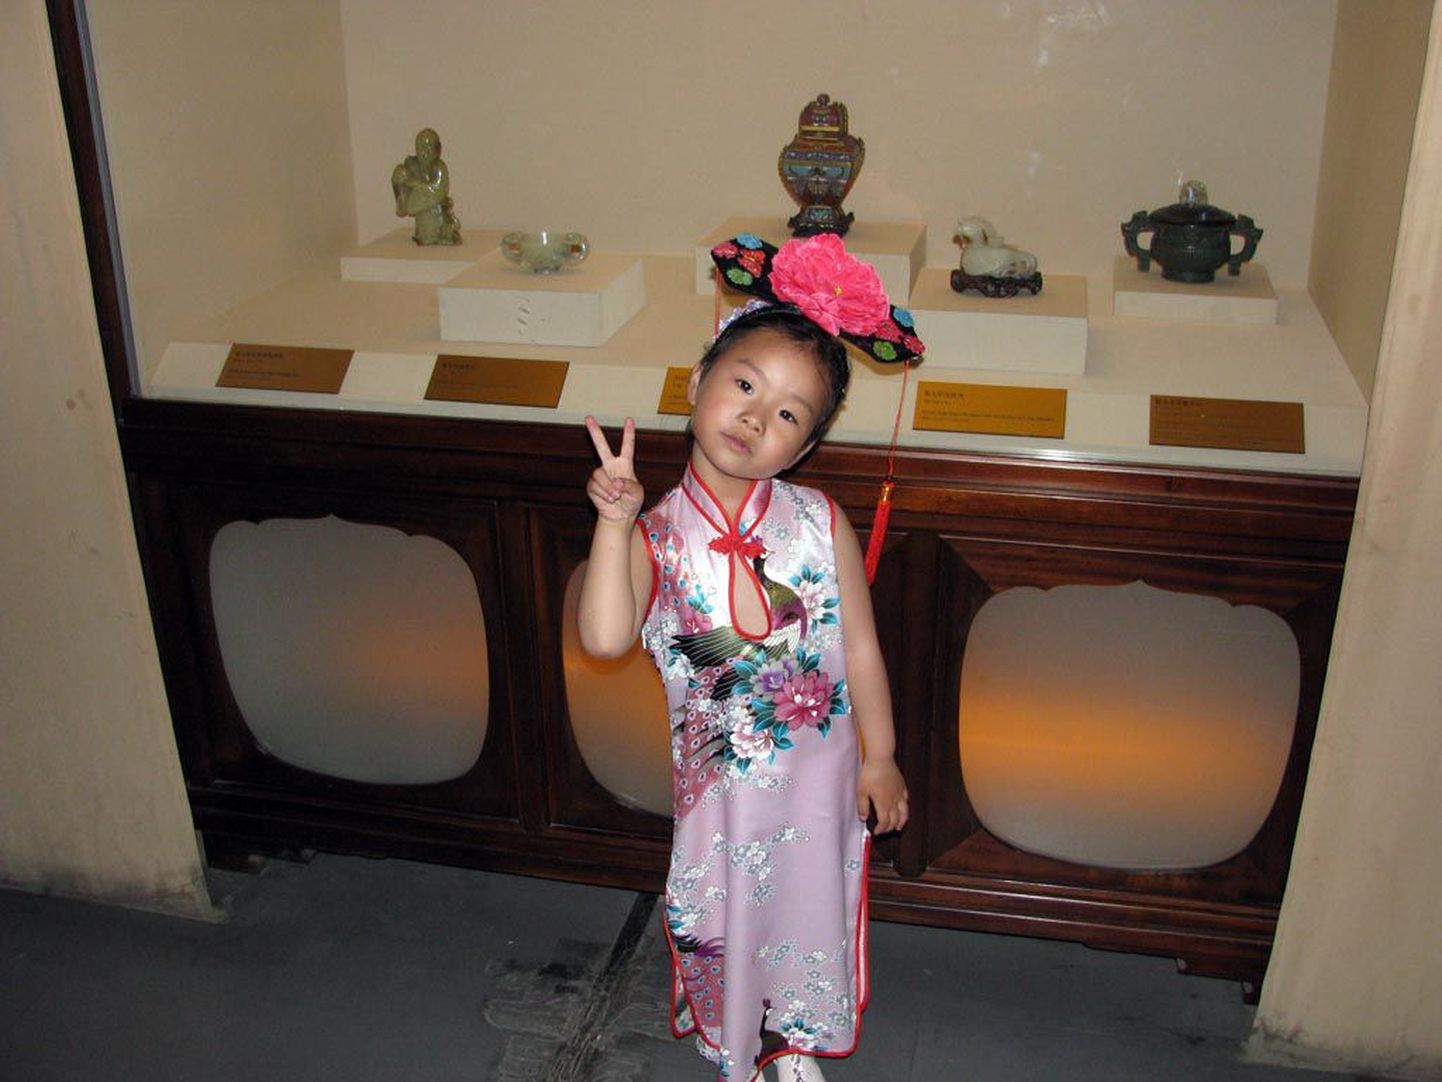 Hiina tüdruk nautis Keelatud Linnas turistide tähelepanu.